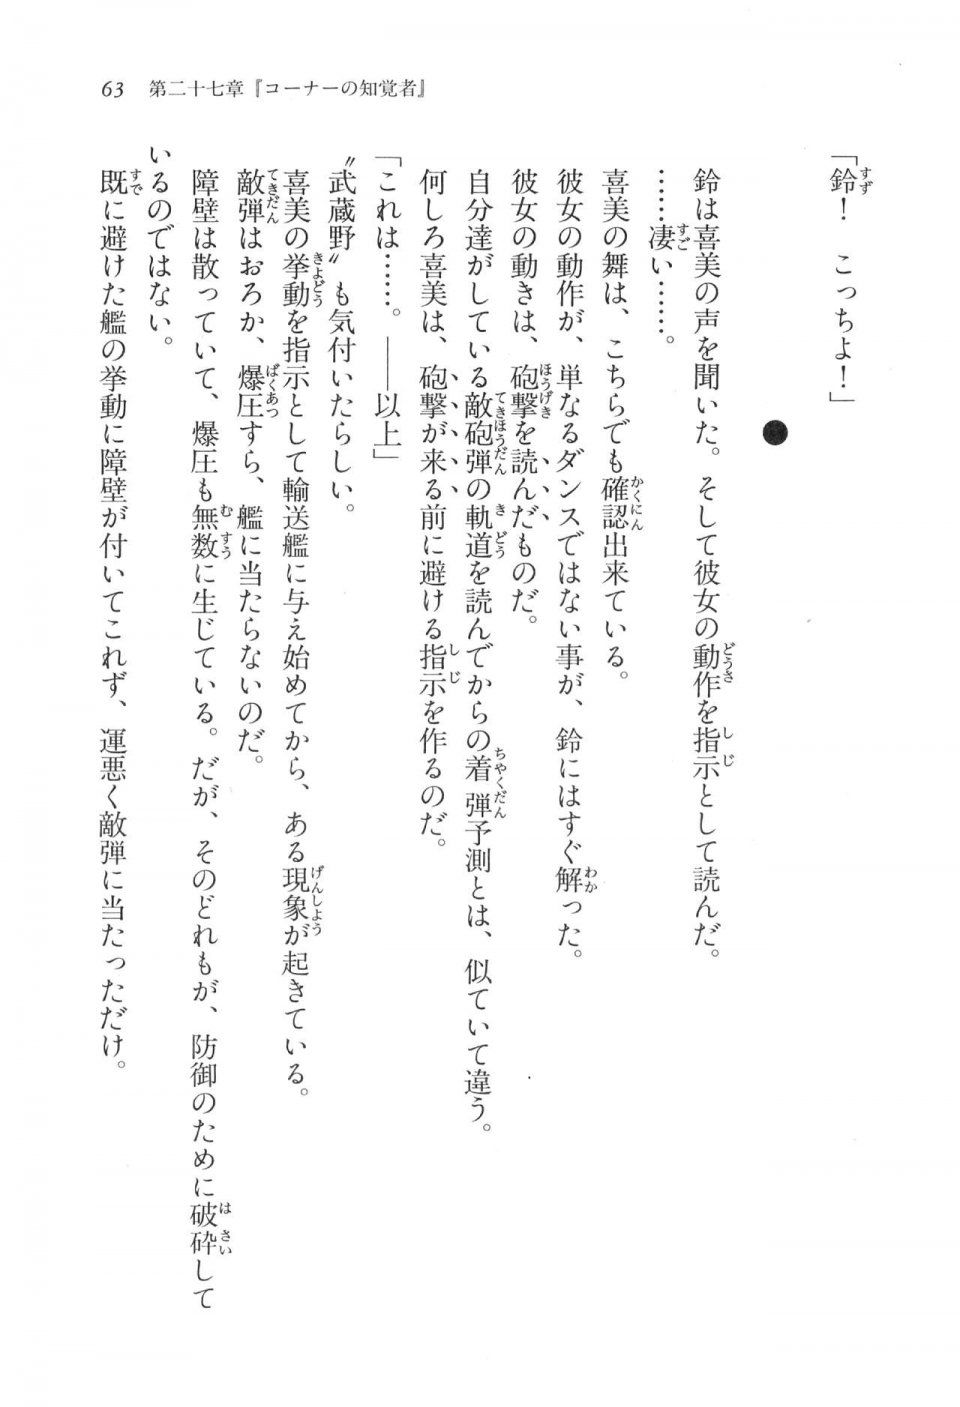 Kyoukai Senjou no Horizon LN Vol 17(7B) - Photo #63